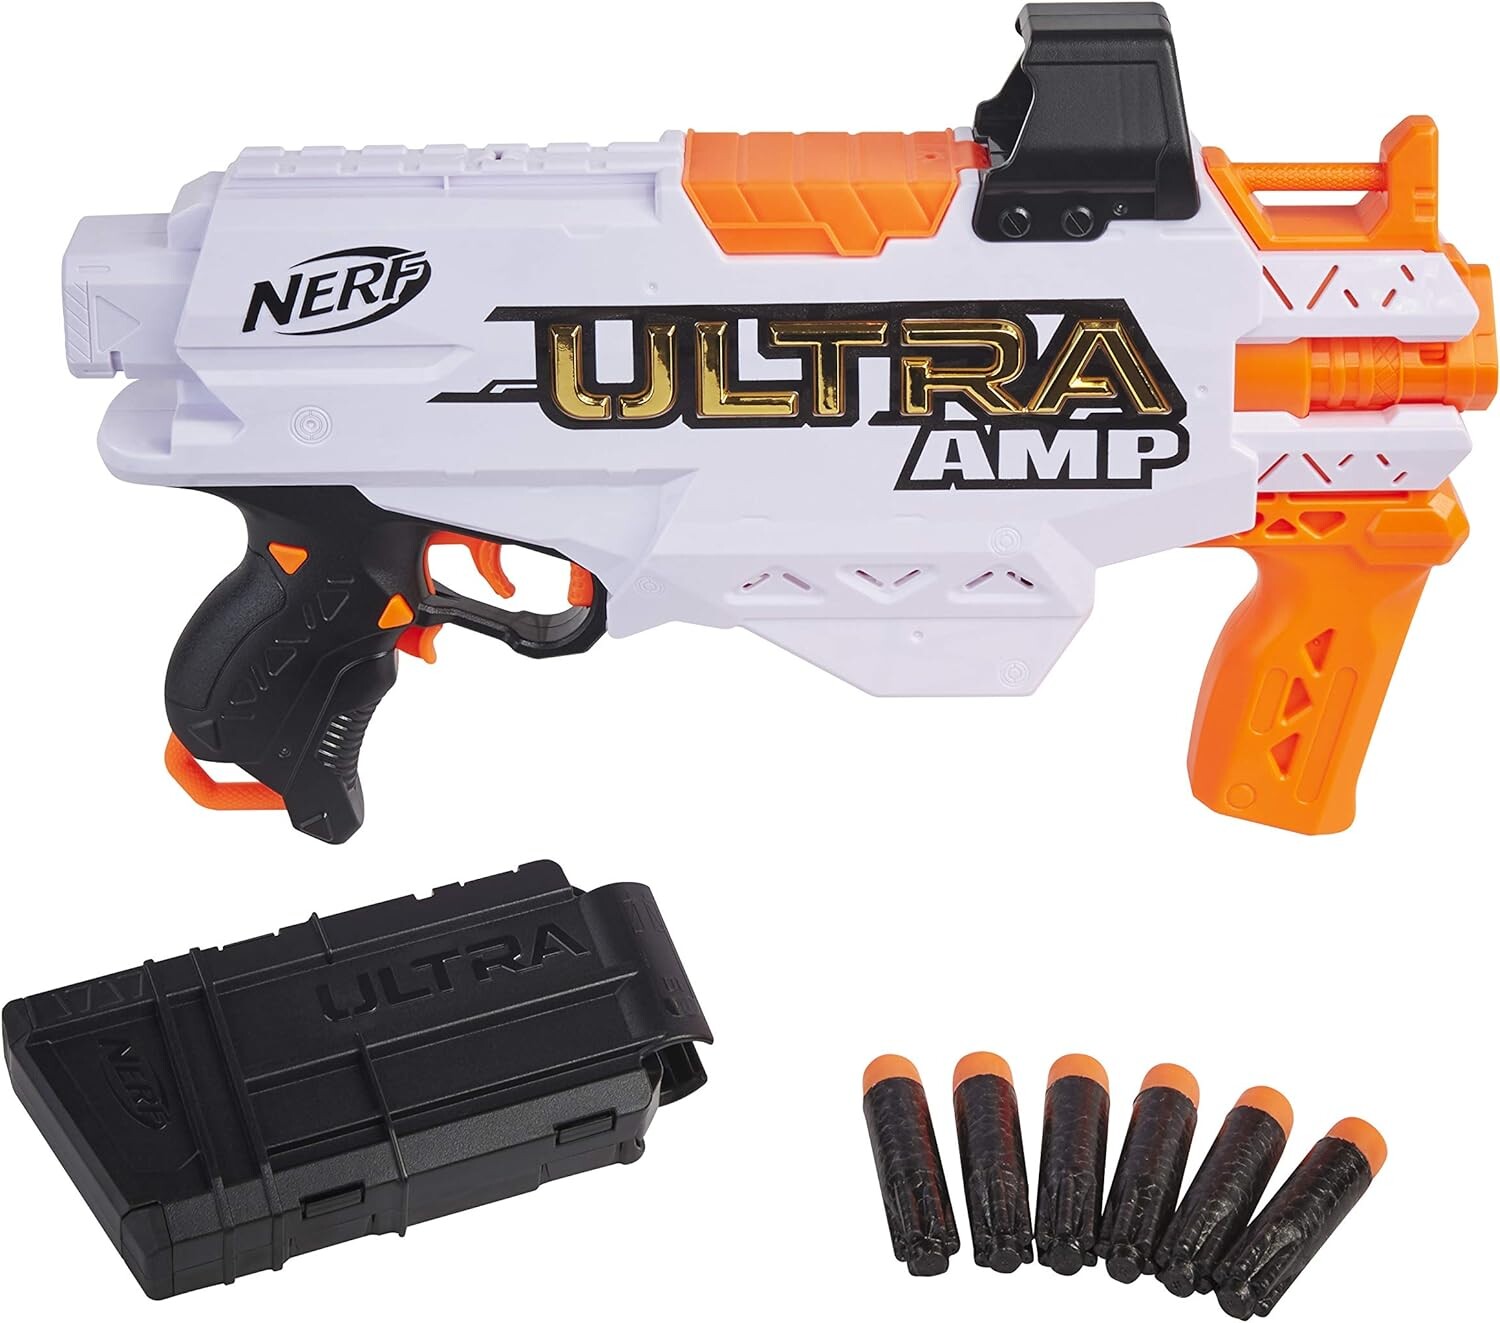 Pisolet Nerf Ultra Amp motorisé, Nerf et jeux de tir